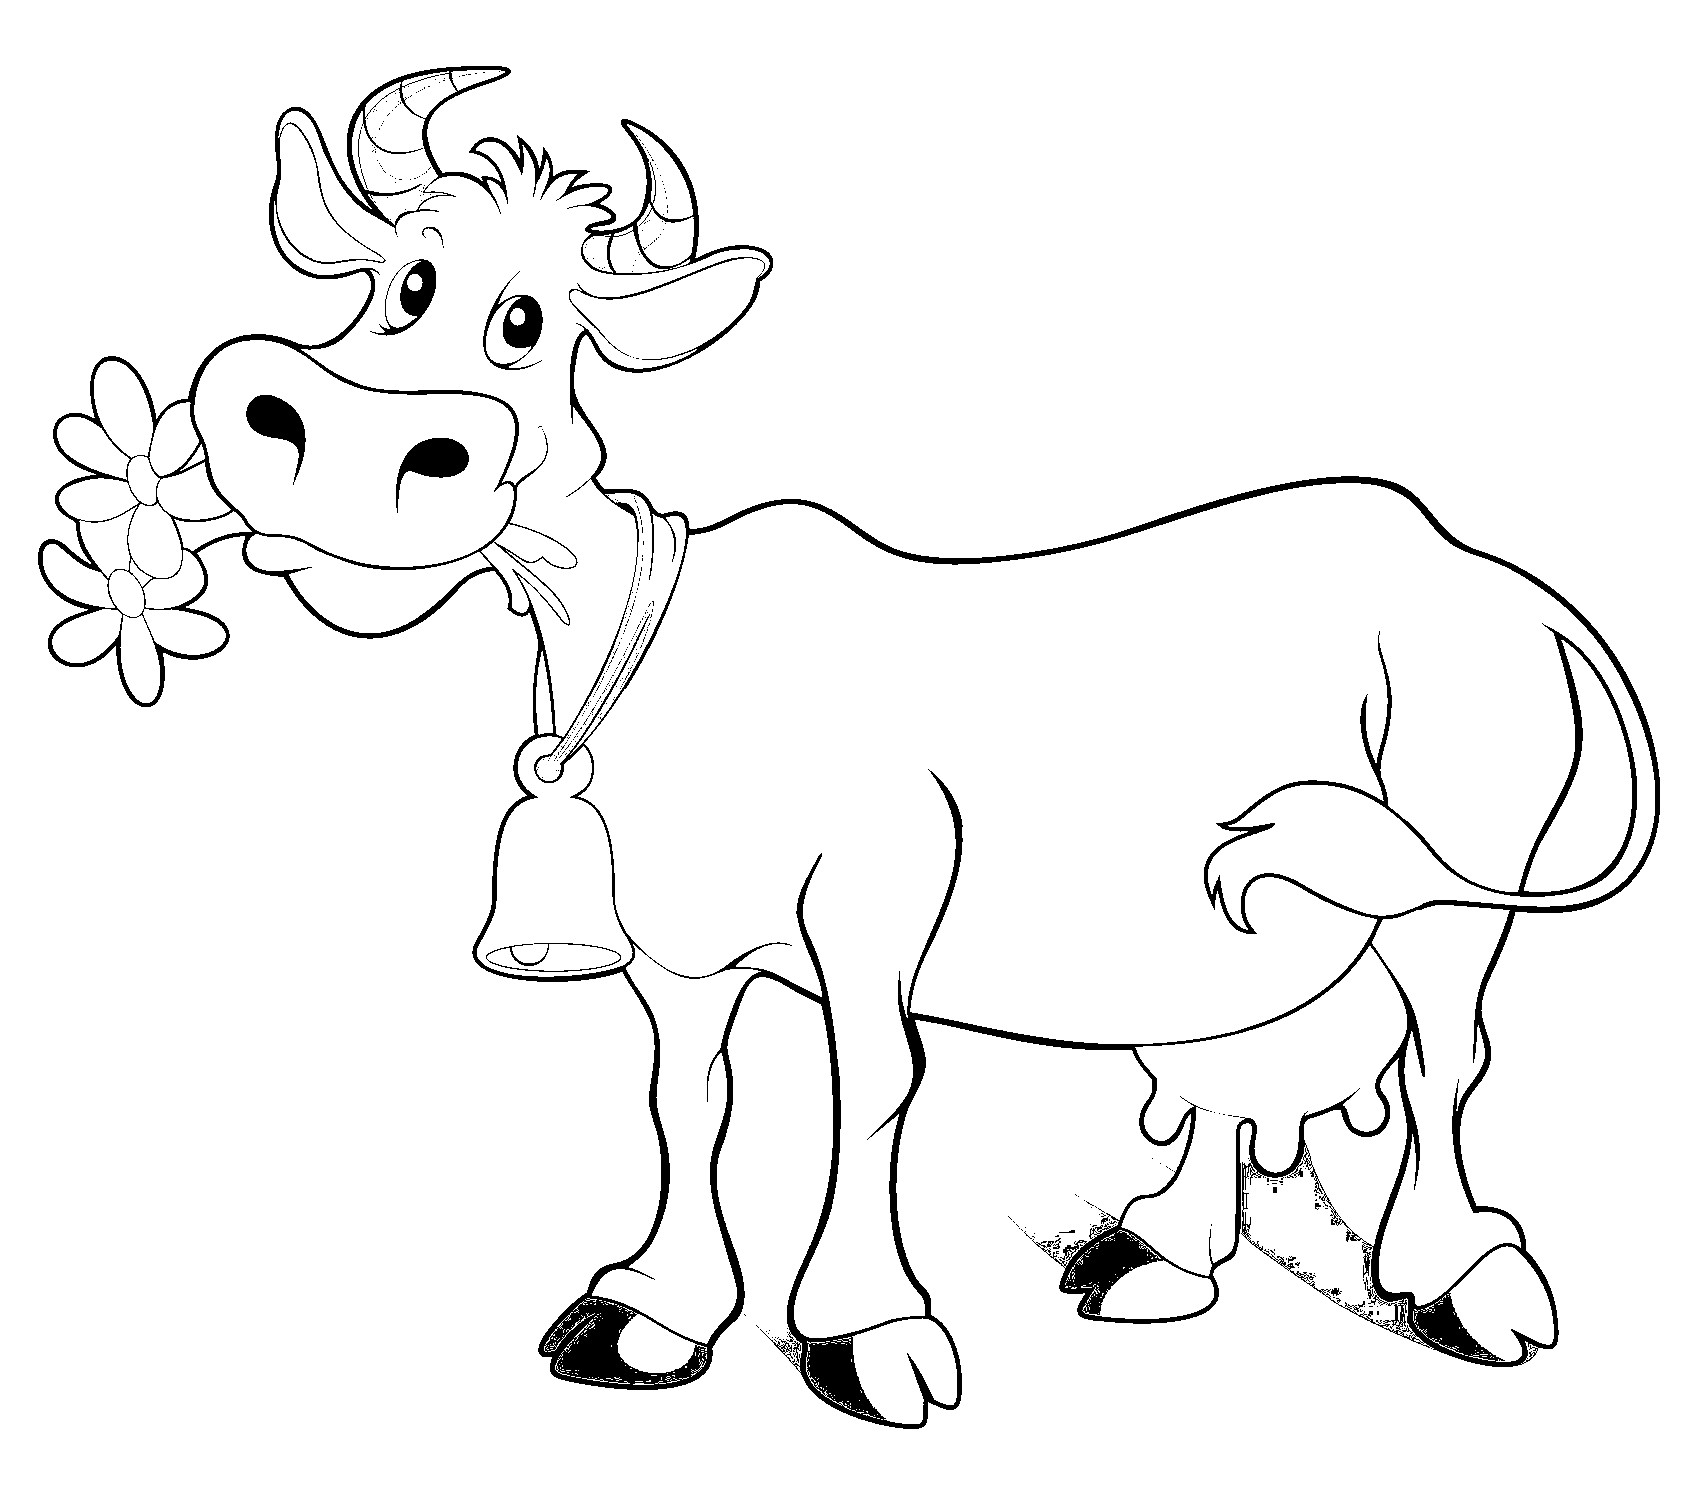 Disegno da colorare di mucca stile cartoon